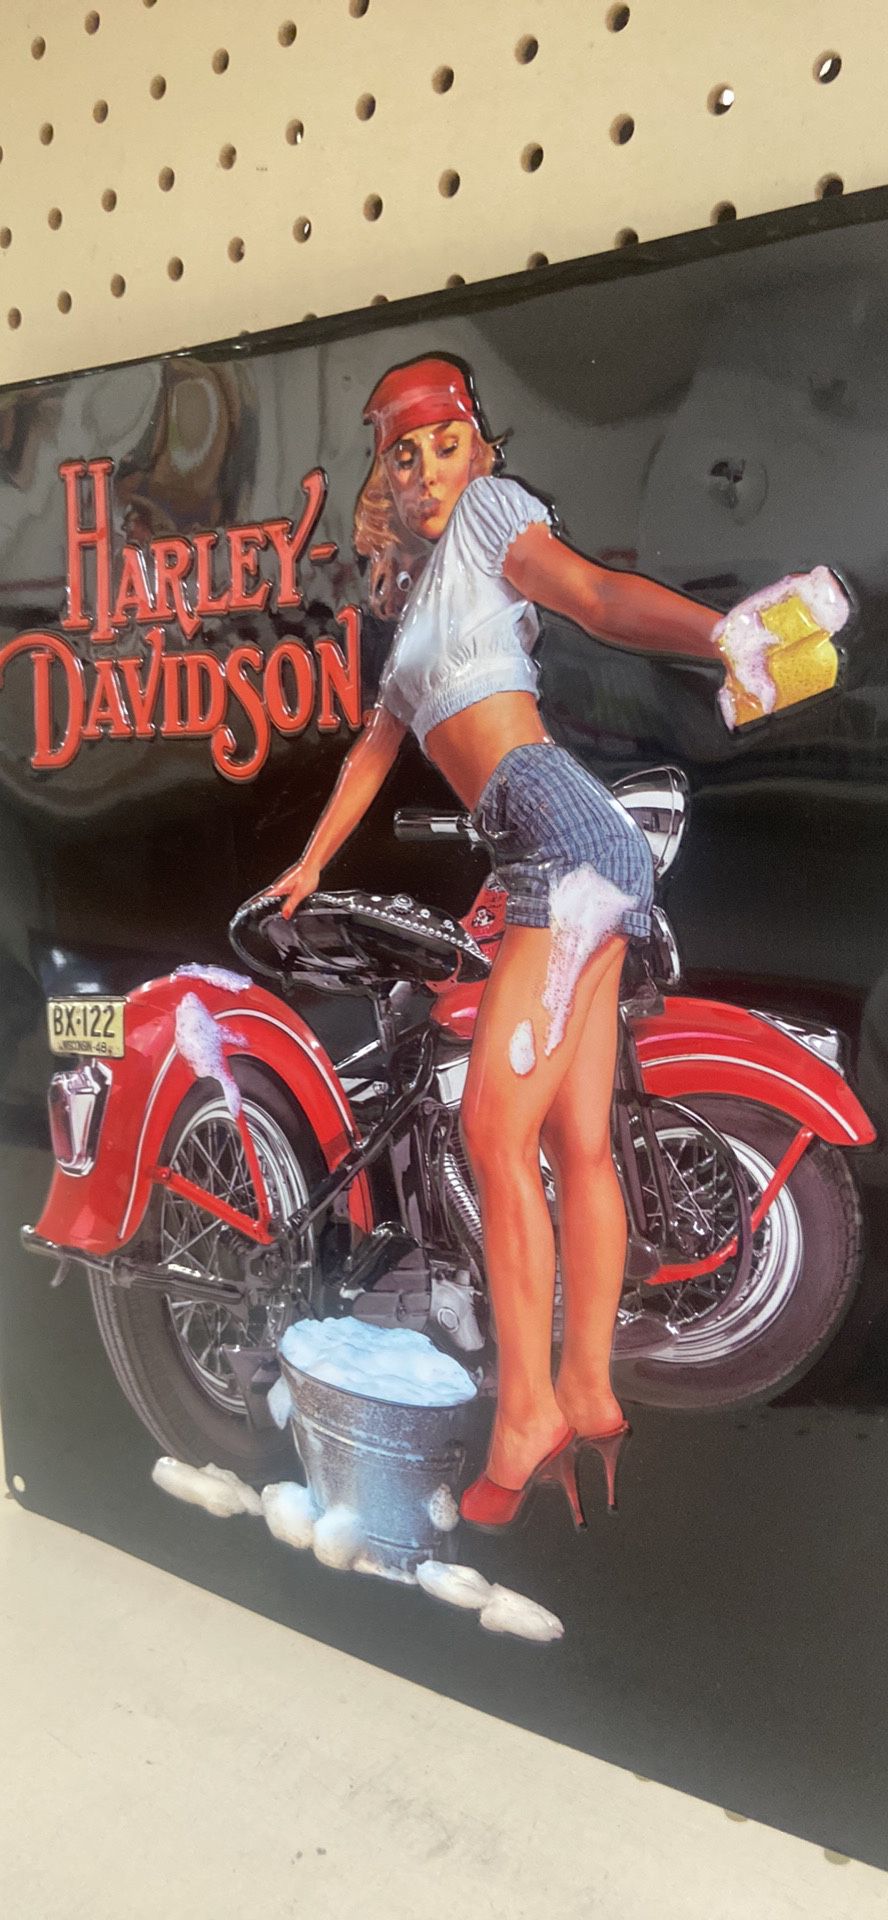 Harley Davidson Sign 